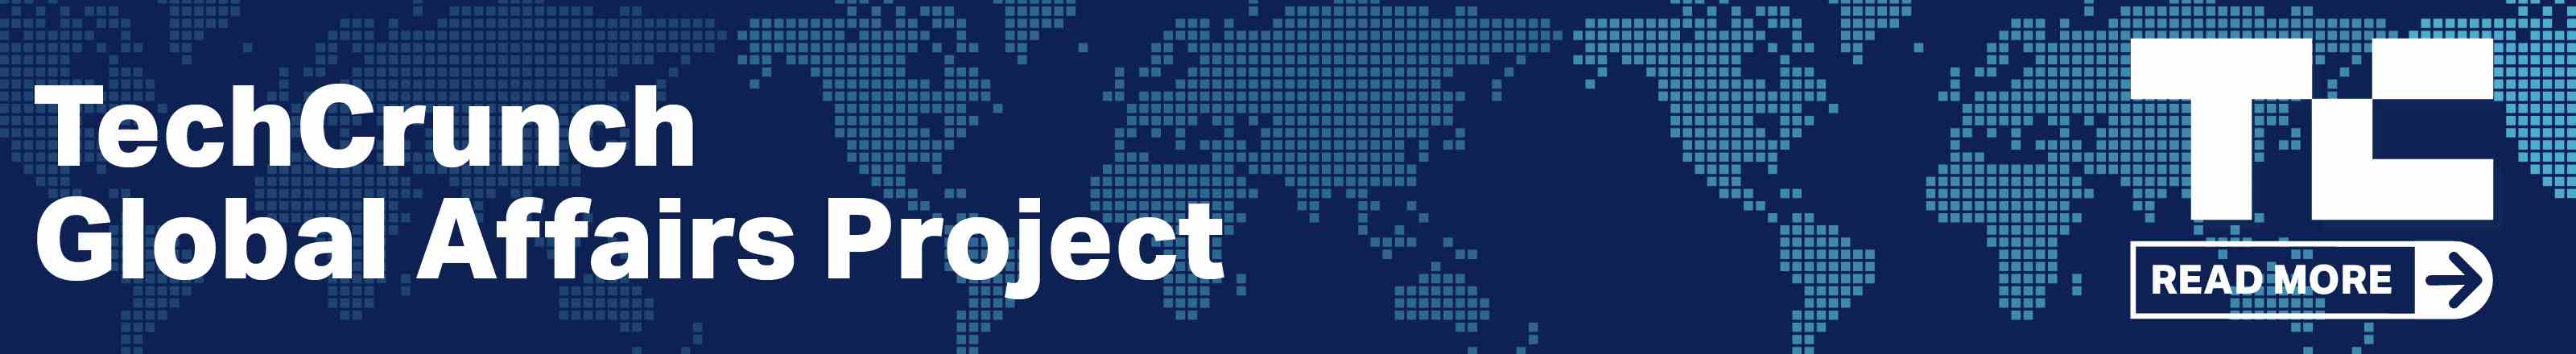 Lesen Sie mehr über das TechCrunch Global Affairs Project